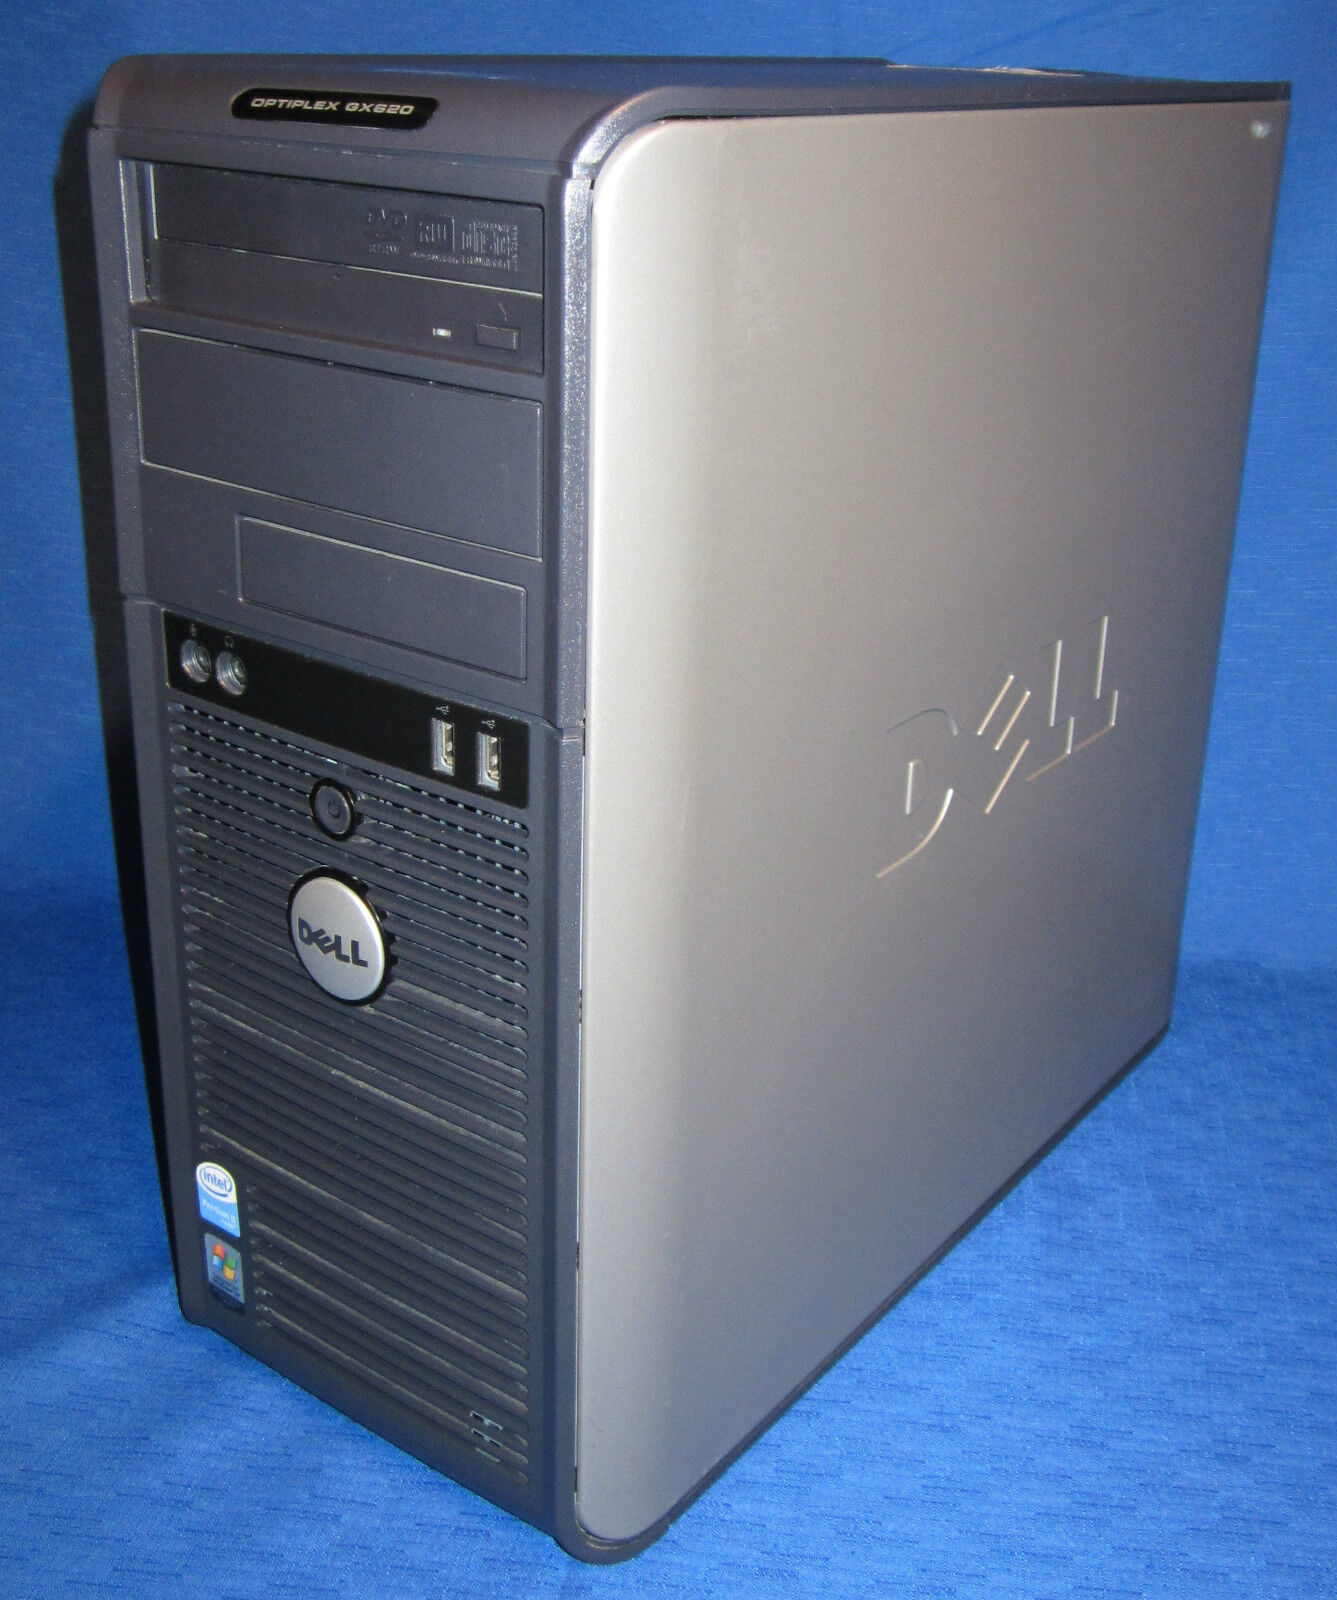 DELL OptiPlex GX620 Desktop Computer Dual Core 3.40GHz 4GB 80GB DVD-RW XP Fast